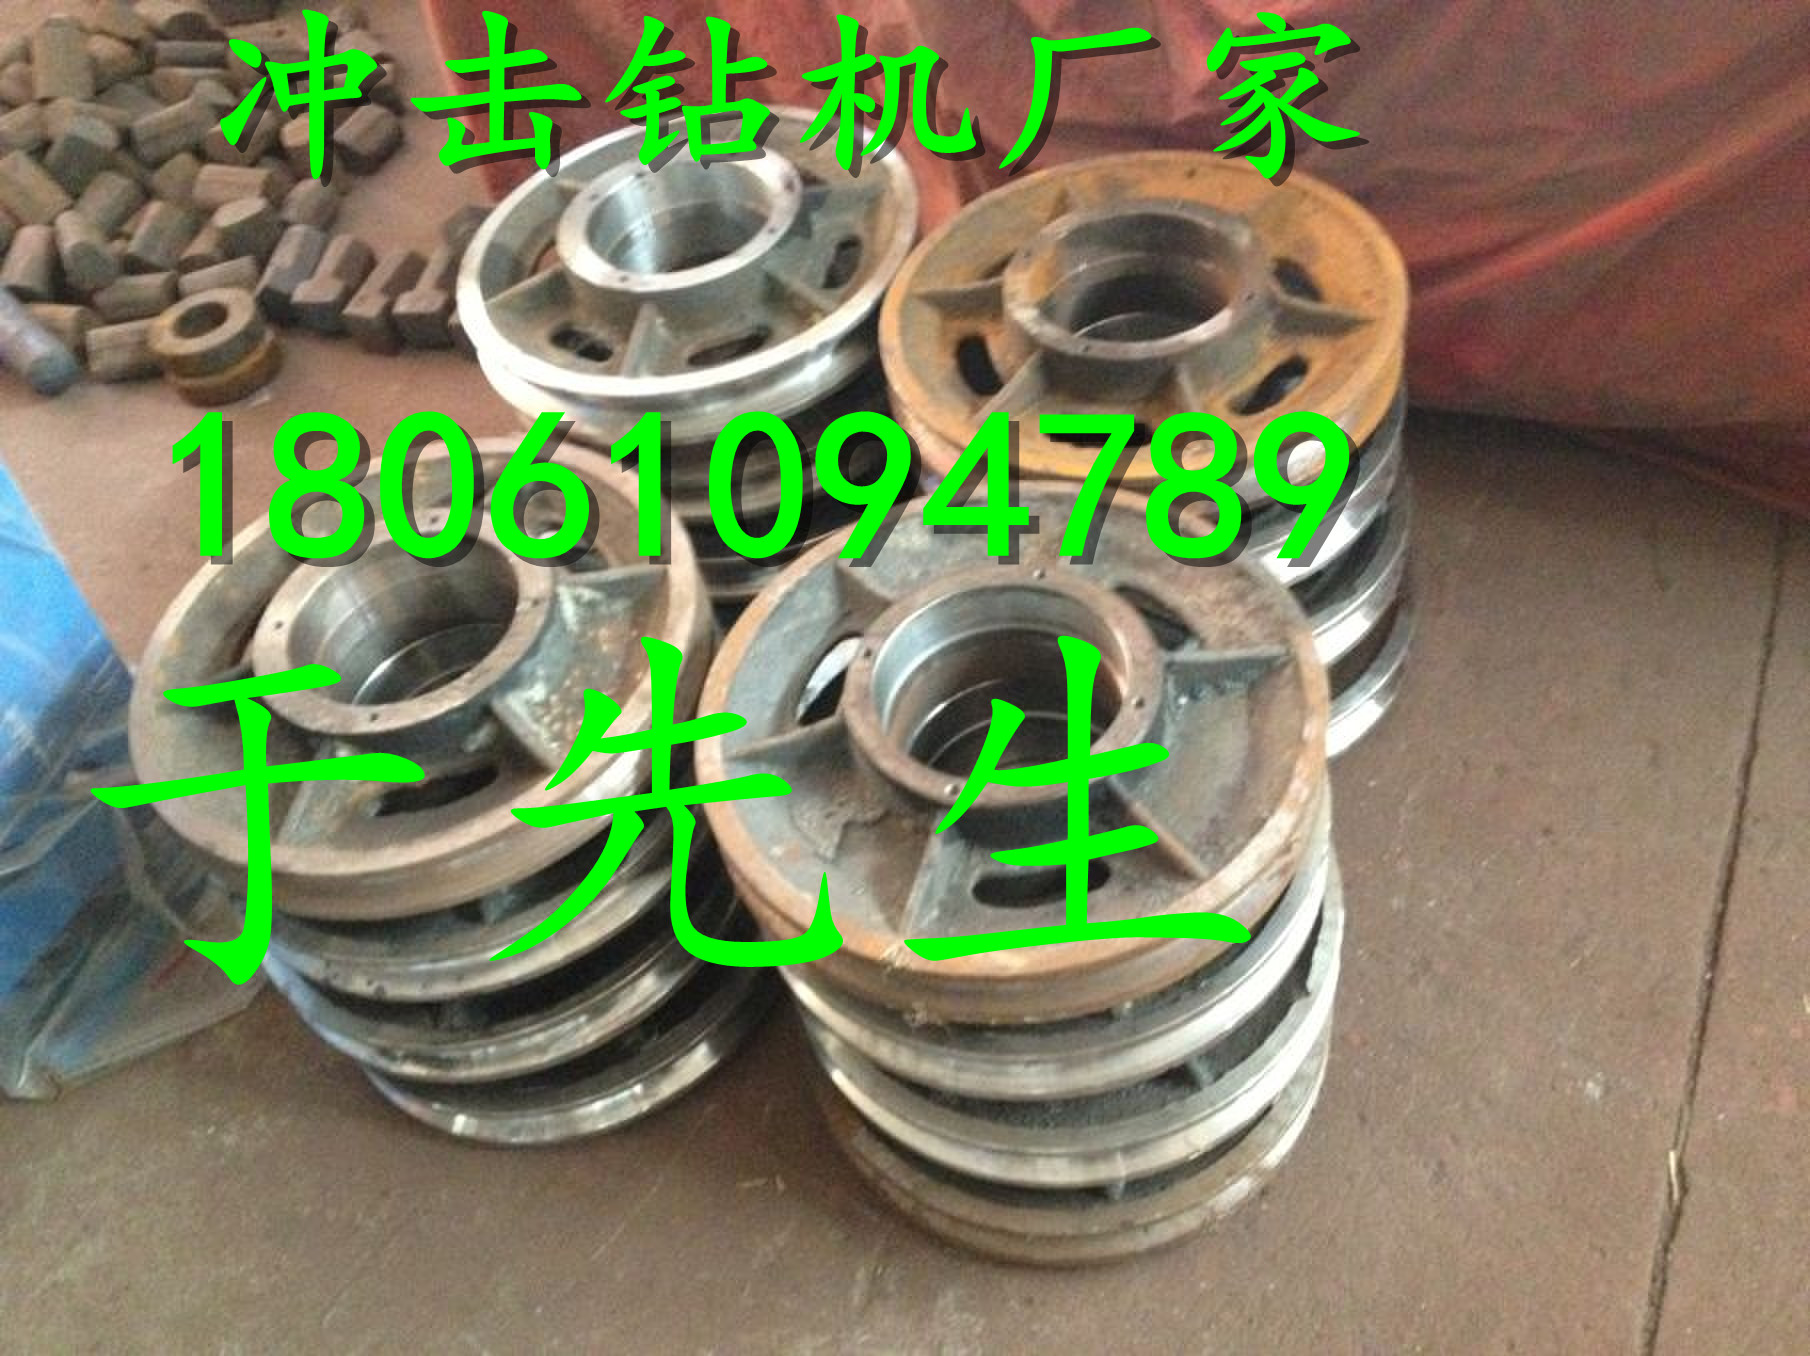 供应用于建筑的北京洛阳卷扬机冲孔桩锤导管图片